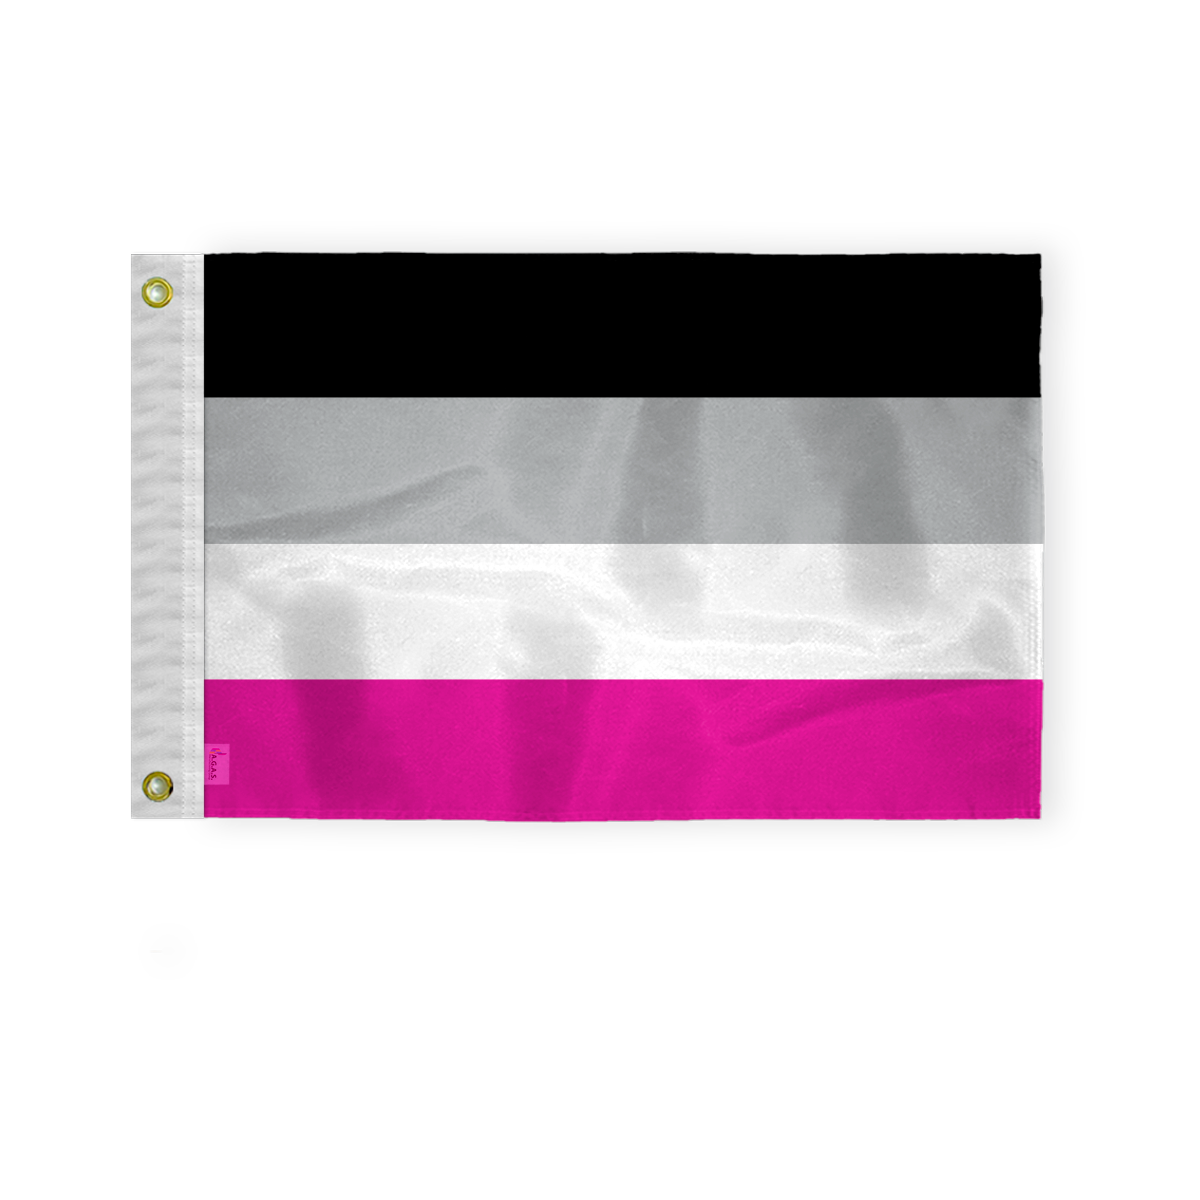 AGAS Gynephilia Pride Boat Nautical Flag 12x18 Inch